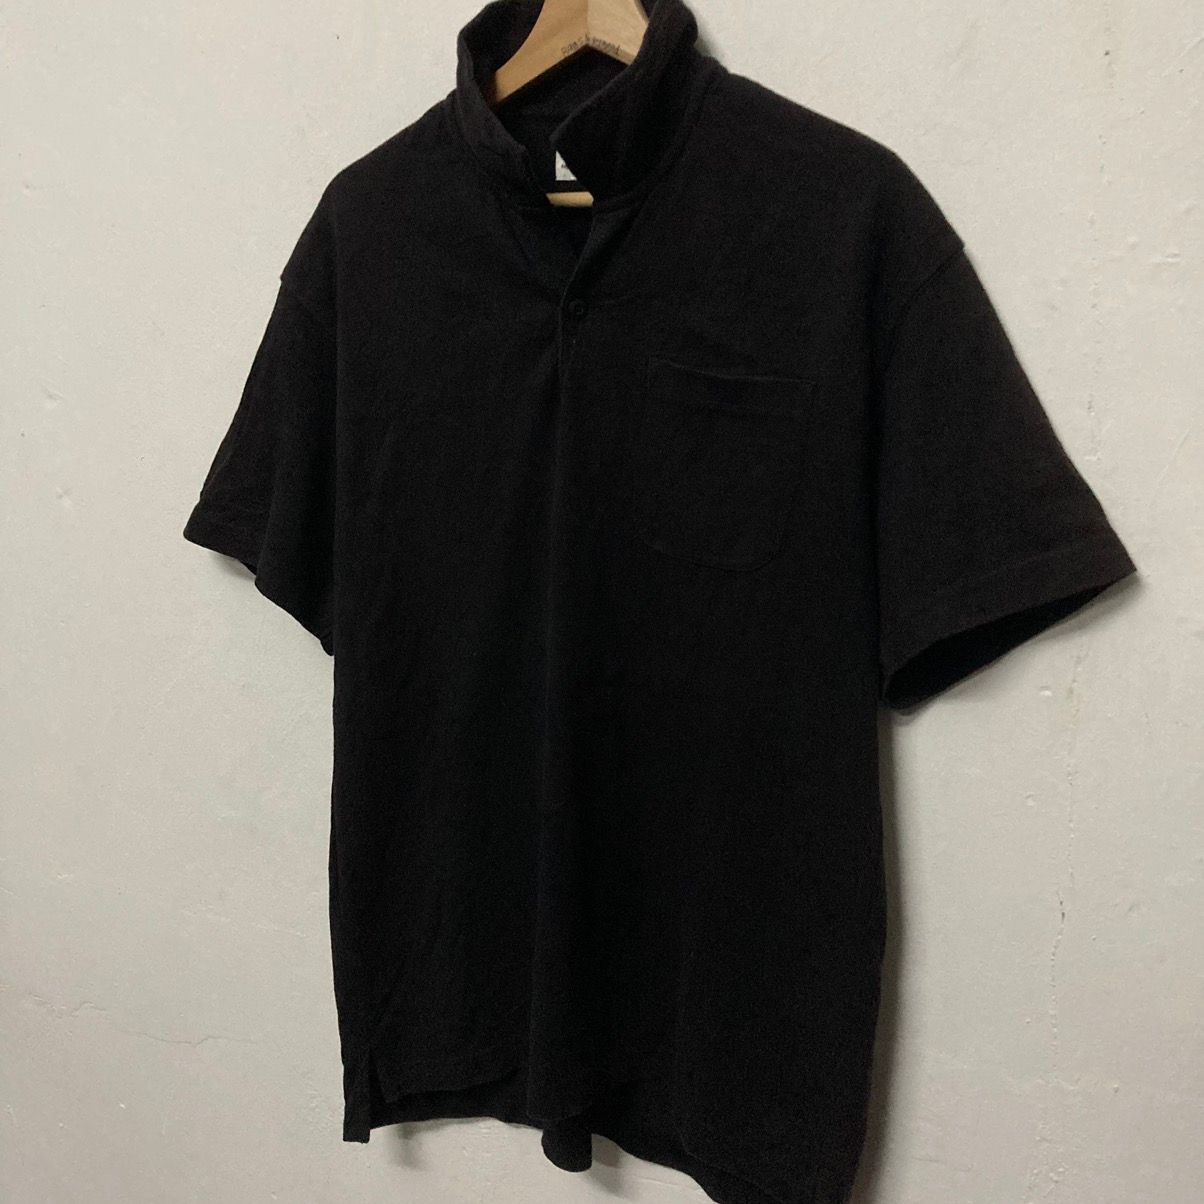 Uniqlo x Engineered Garments Polo Tshirt - 3